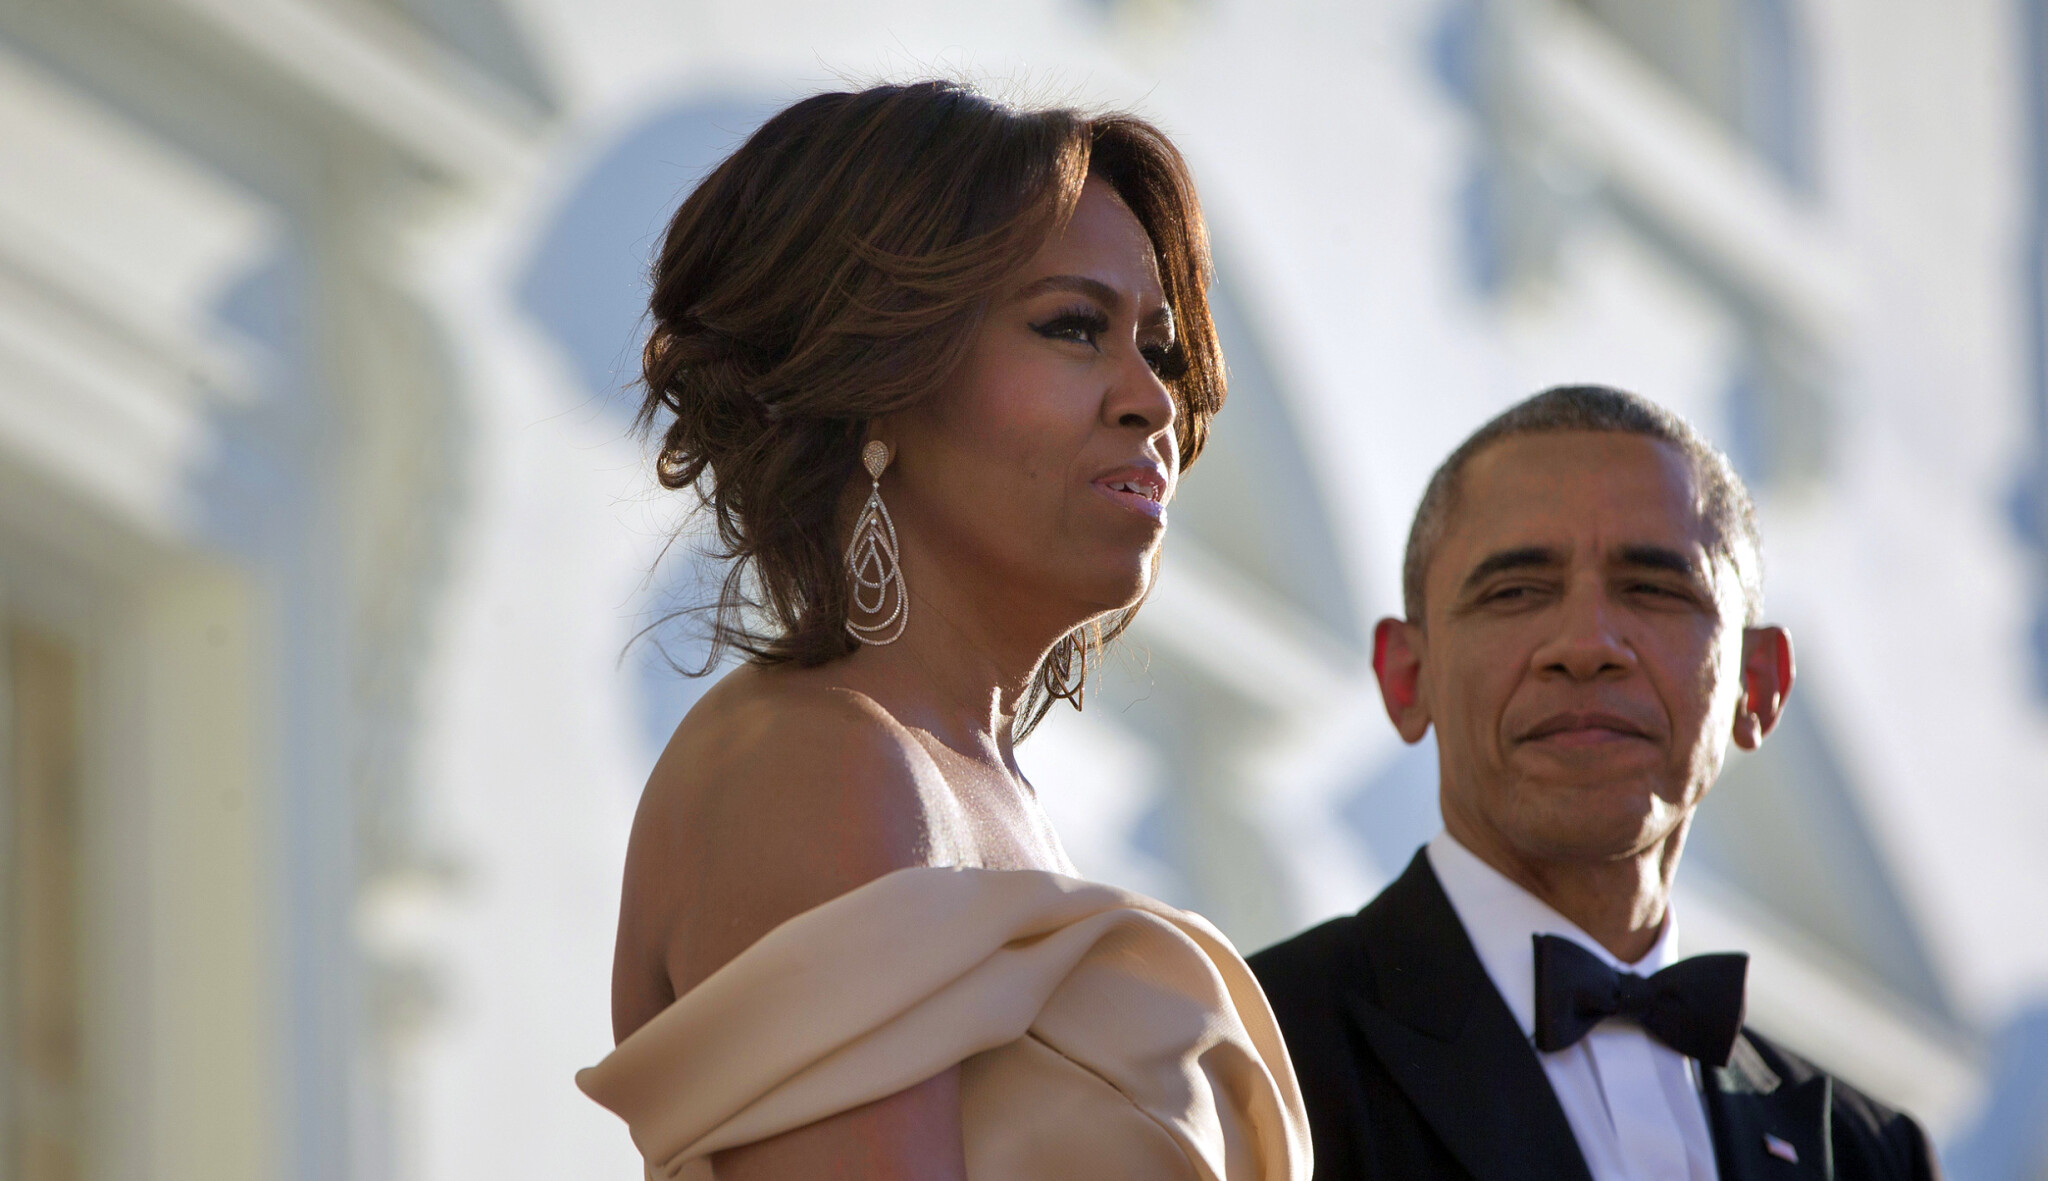 Michelle for president? Nový dokument o Obamové leští image globální ikony